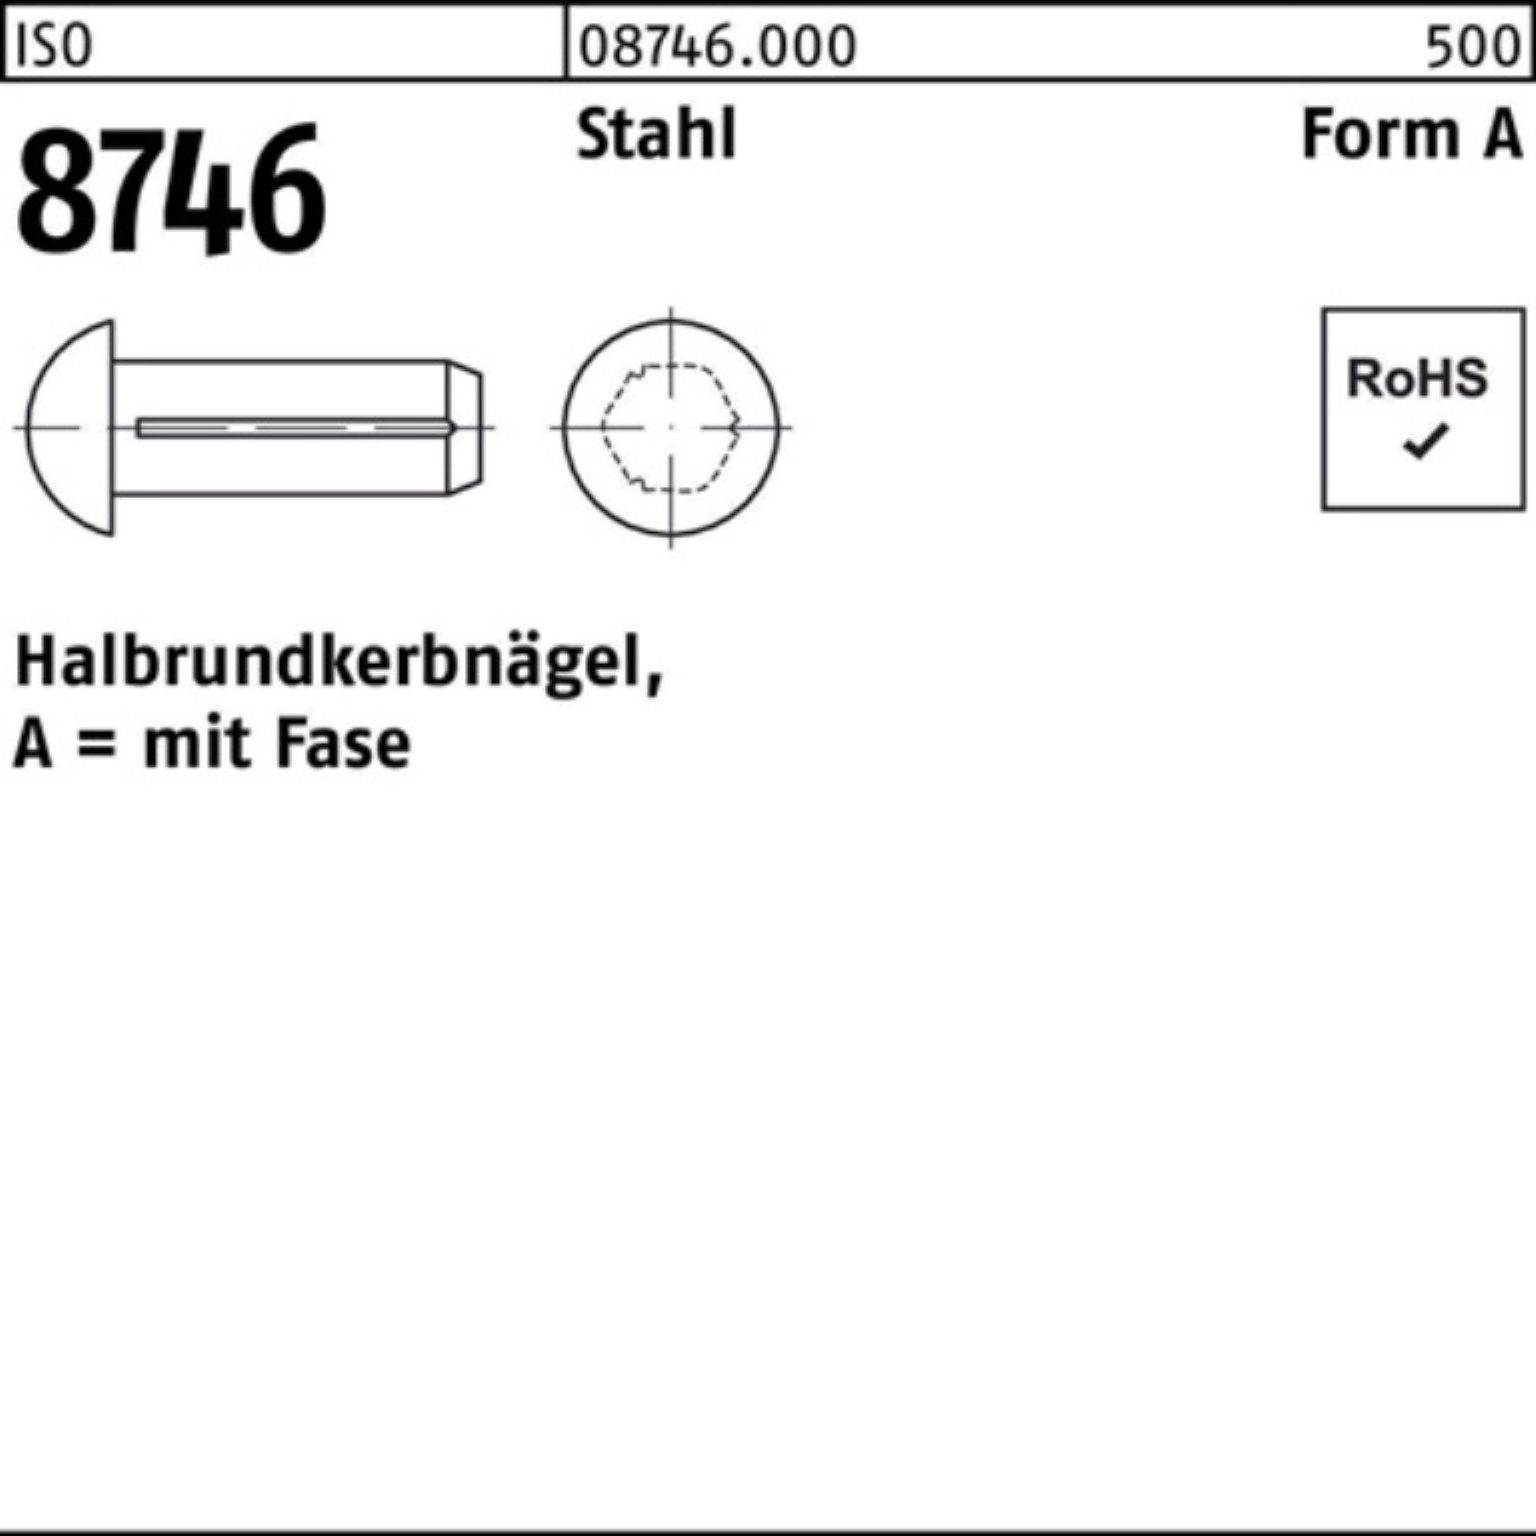 8746 Nagel Halbrundkerbnagel Stück 3x Reyher Pack 8 Stahl 500er ISO 5 Fase 500 ISO